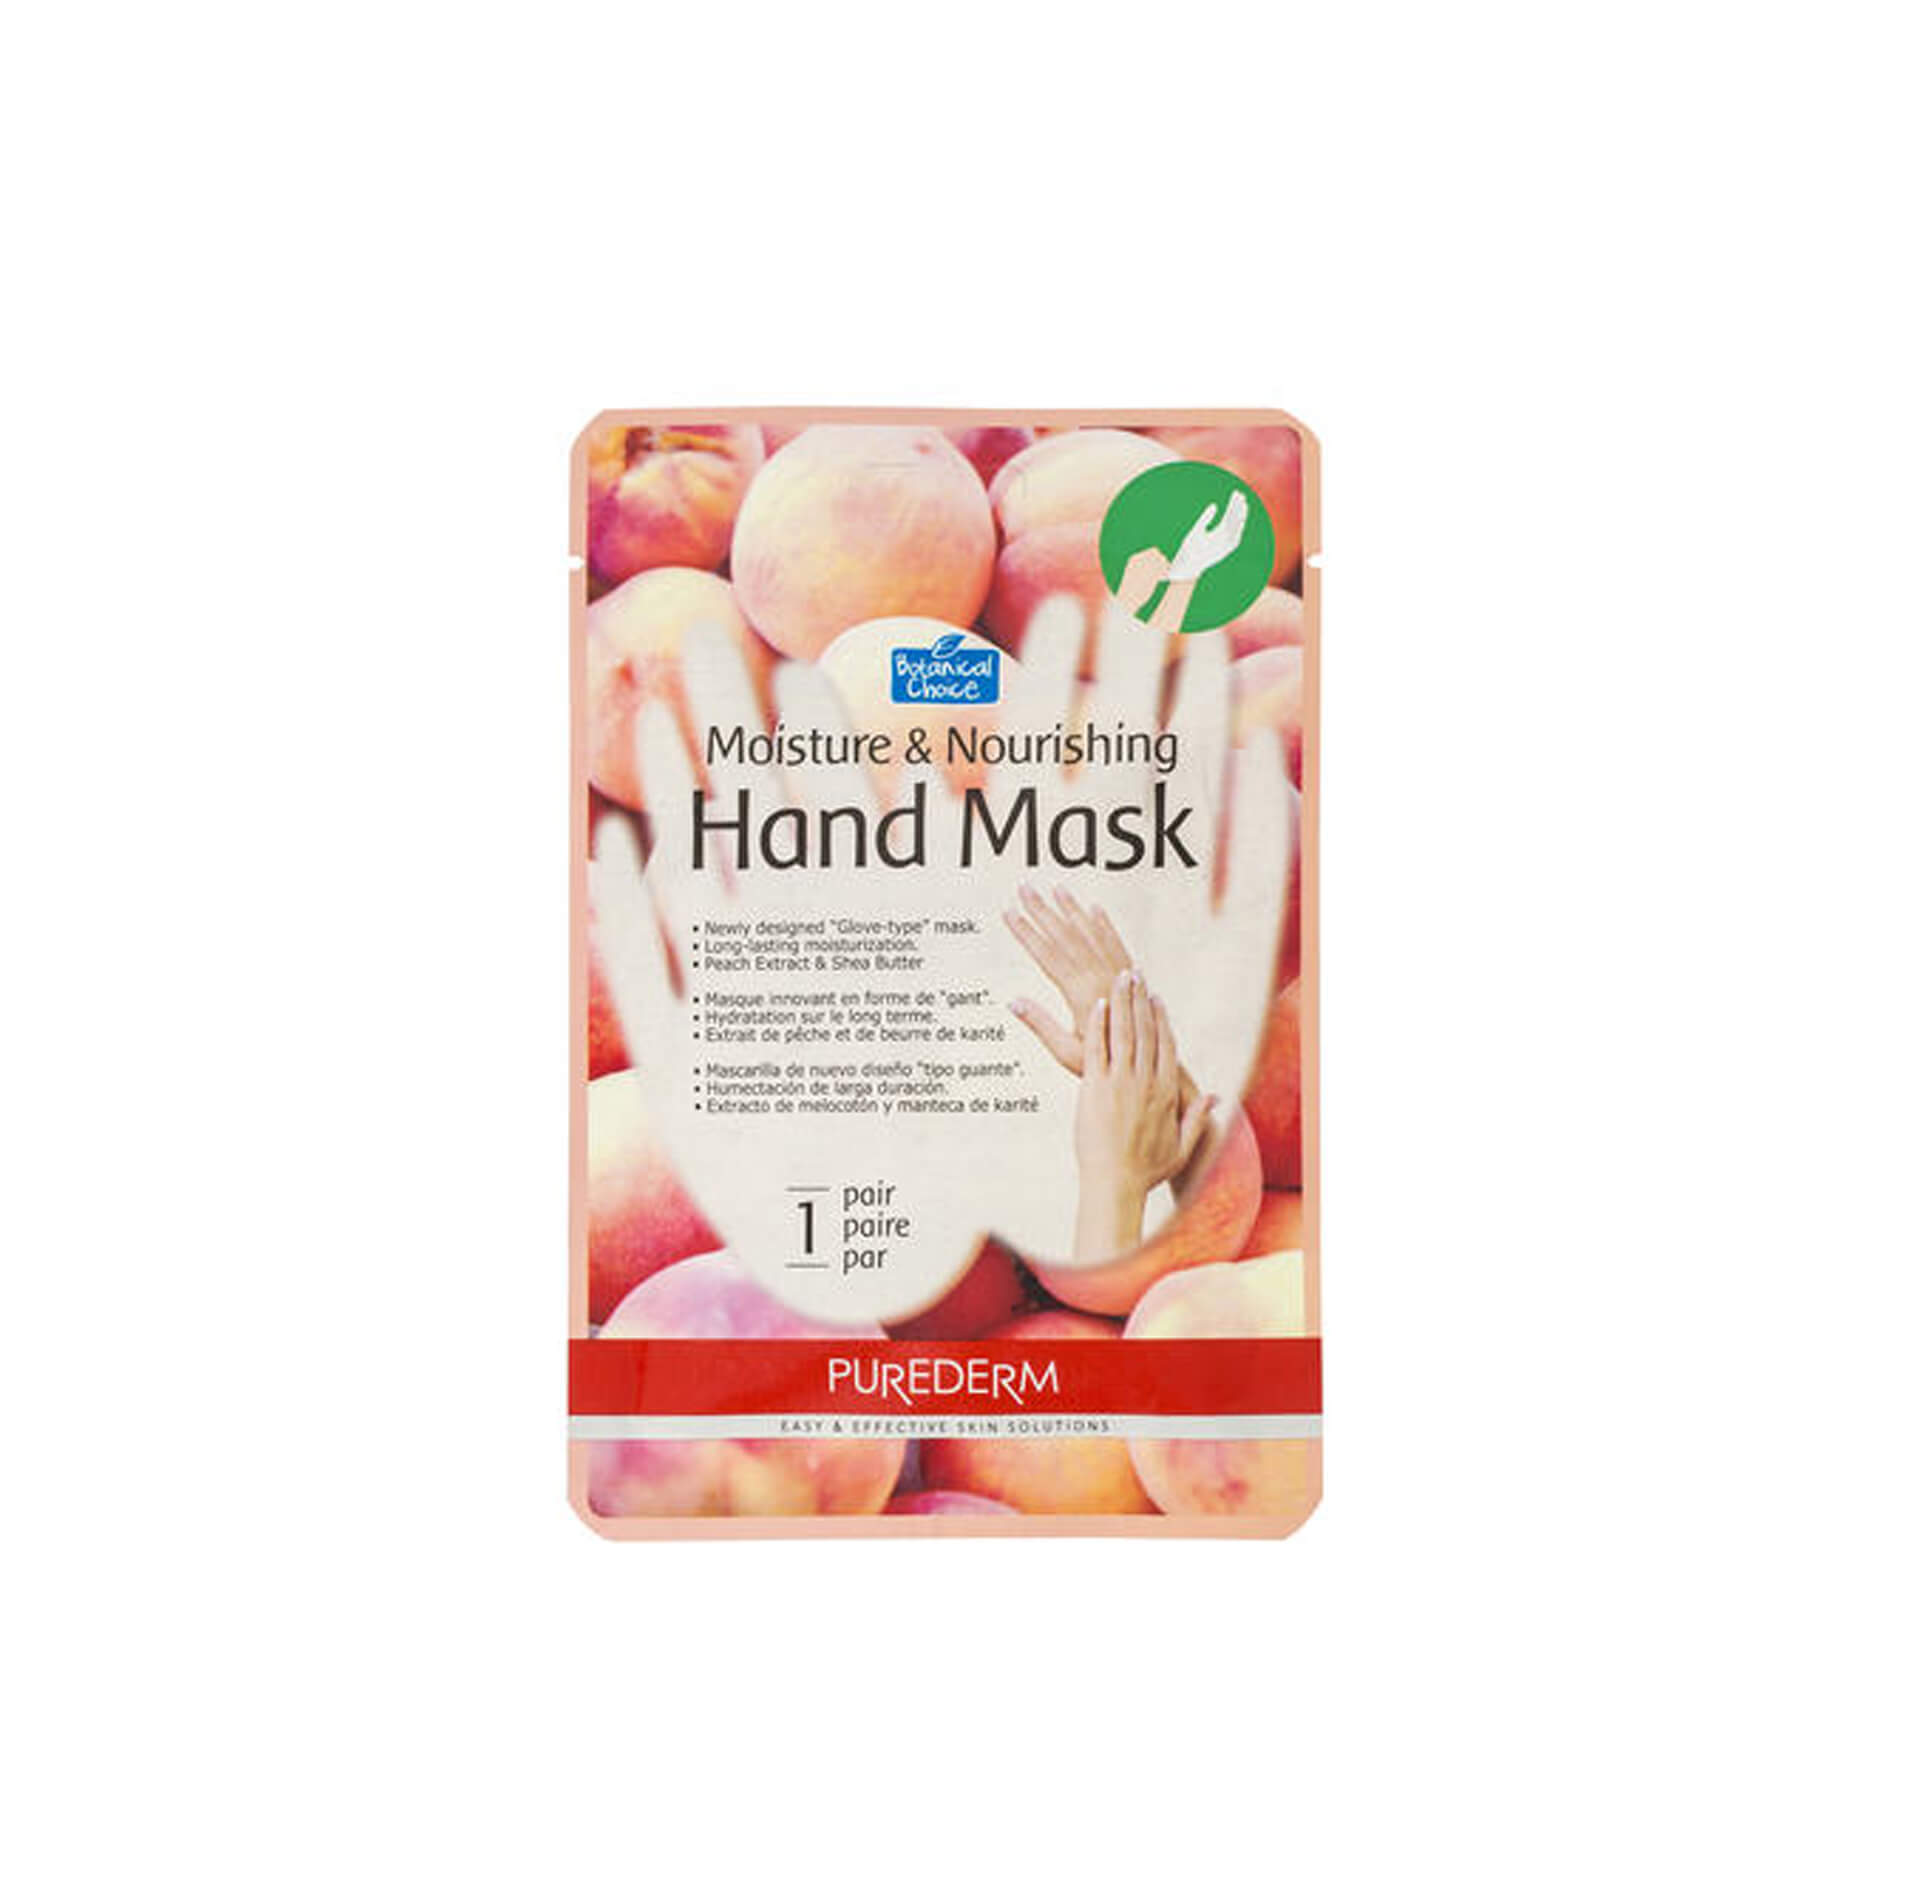 Moisture and Nourishing Handmask